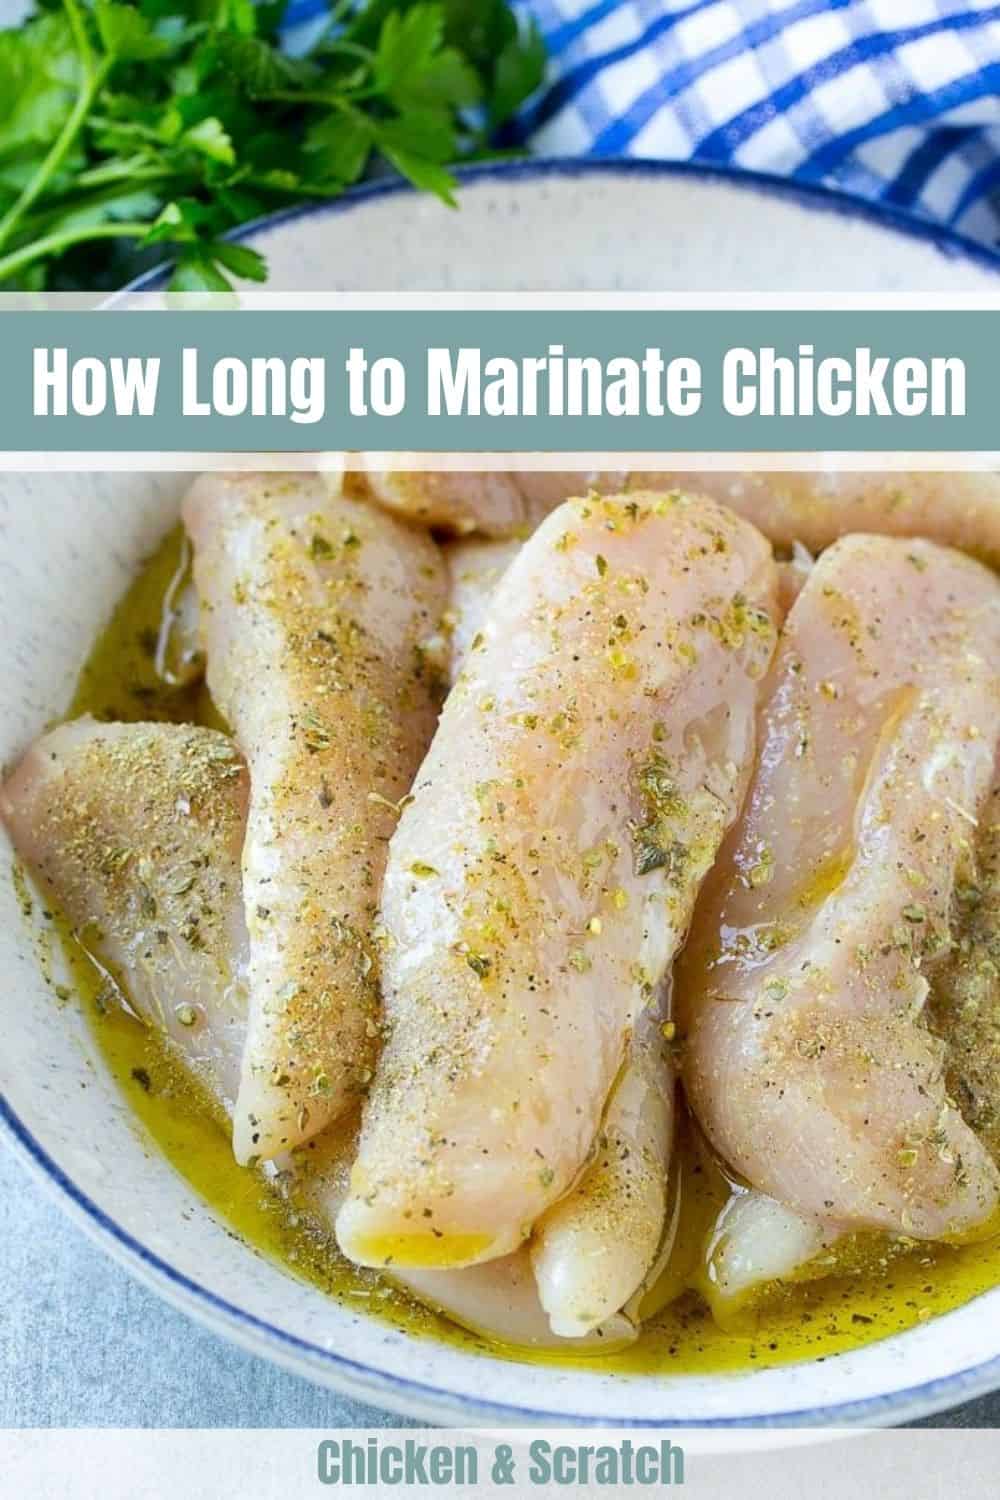 Marinate Chicken